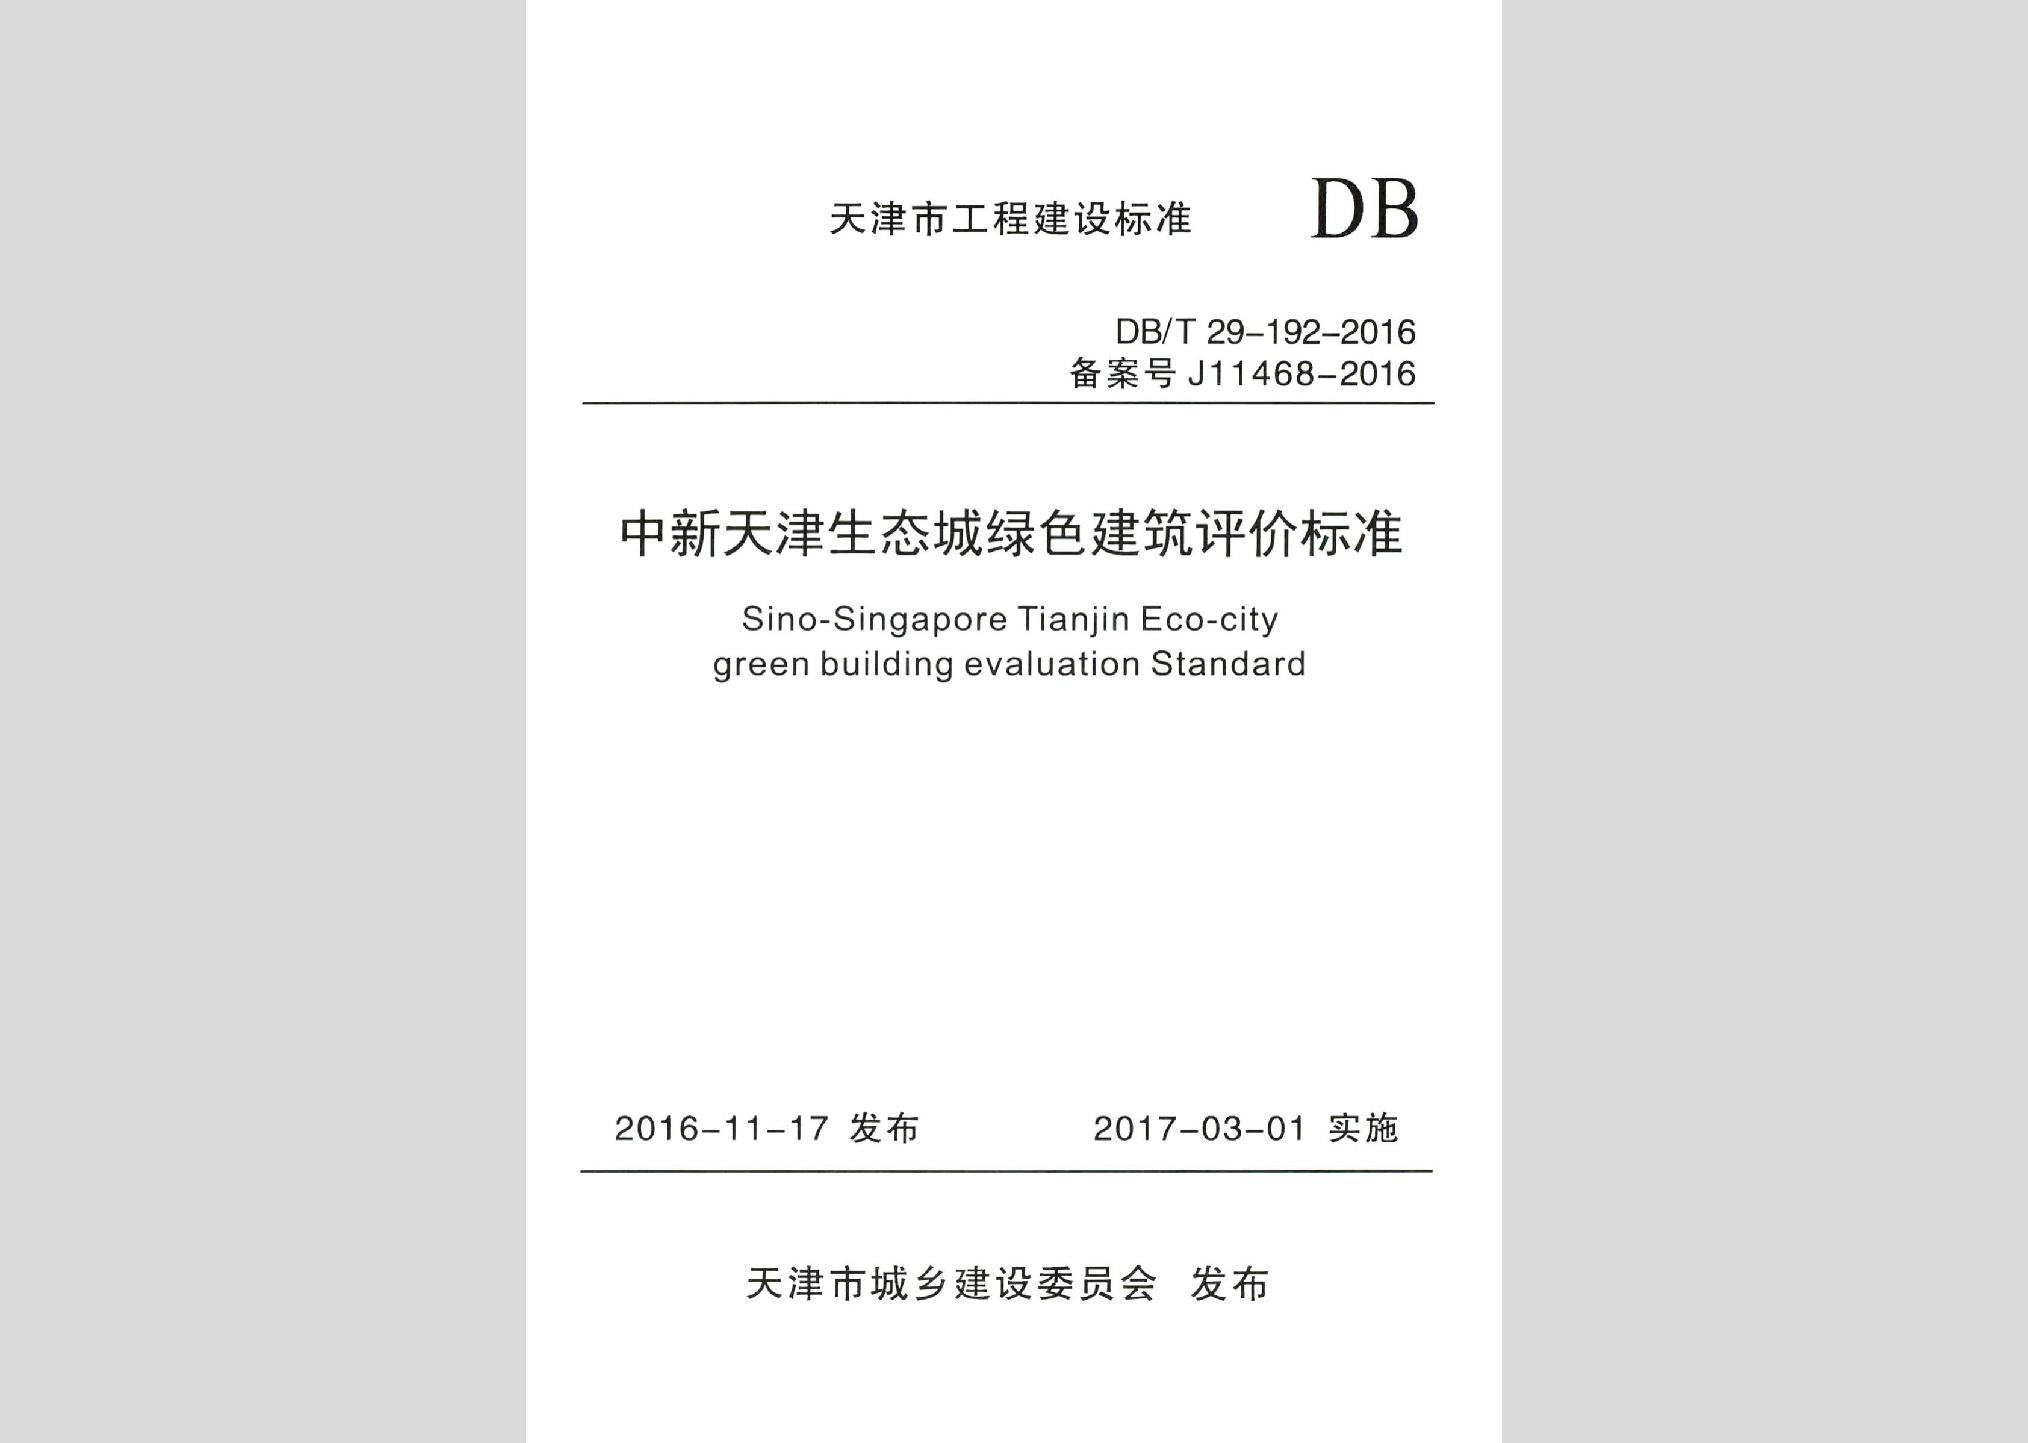 DB/T29-192-2016：中新天津生态城绿色建筑评价标准